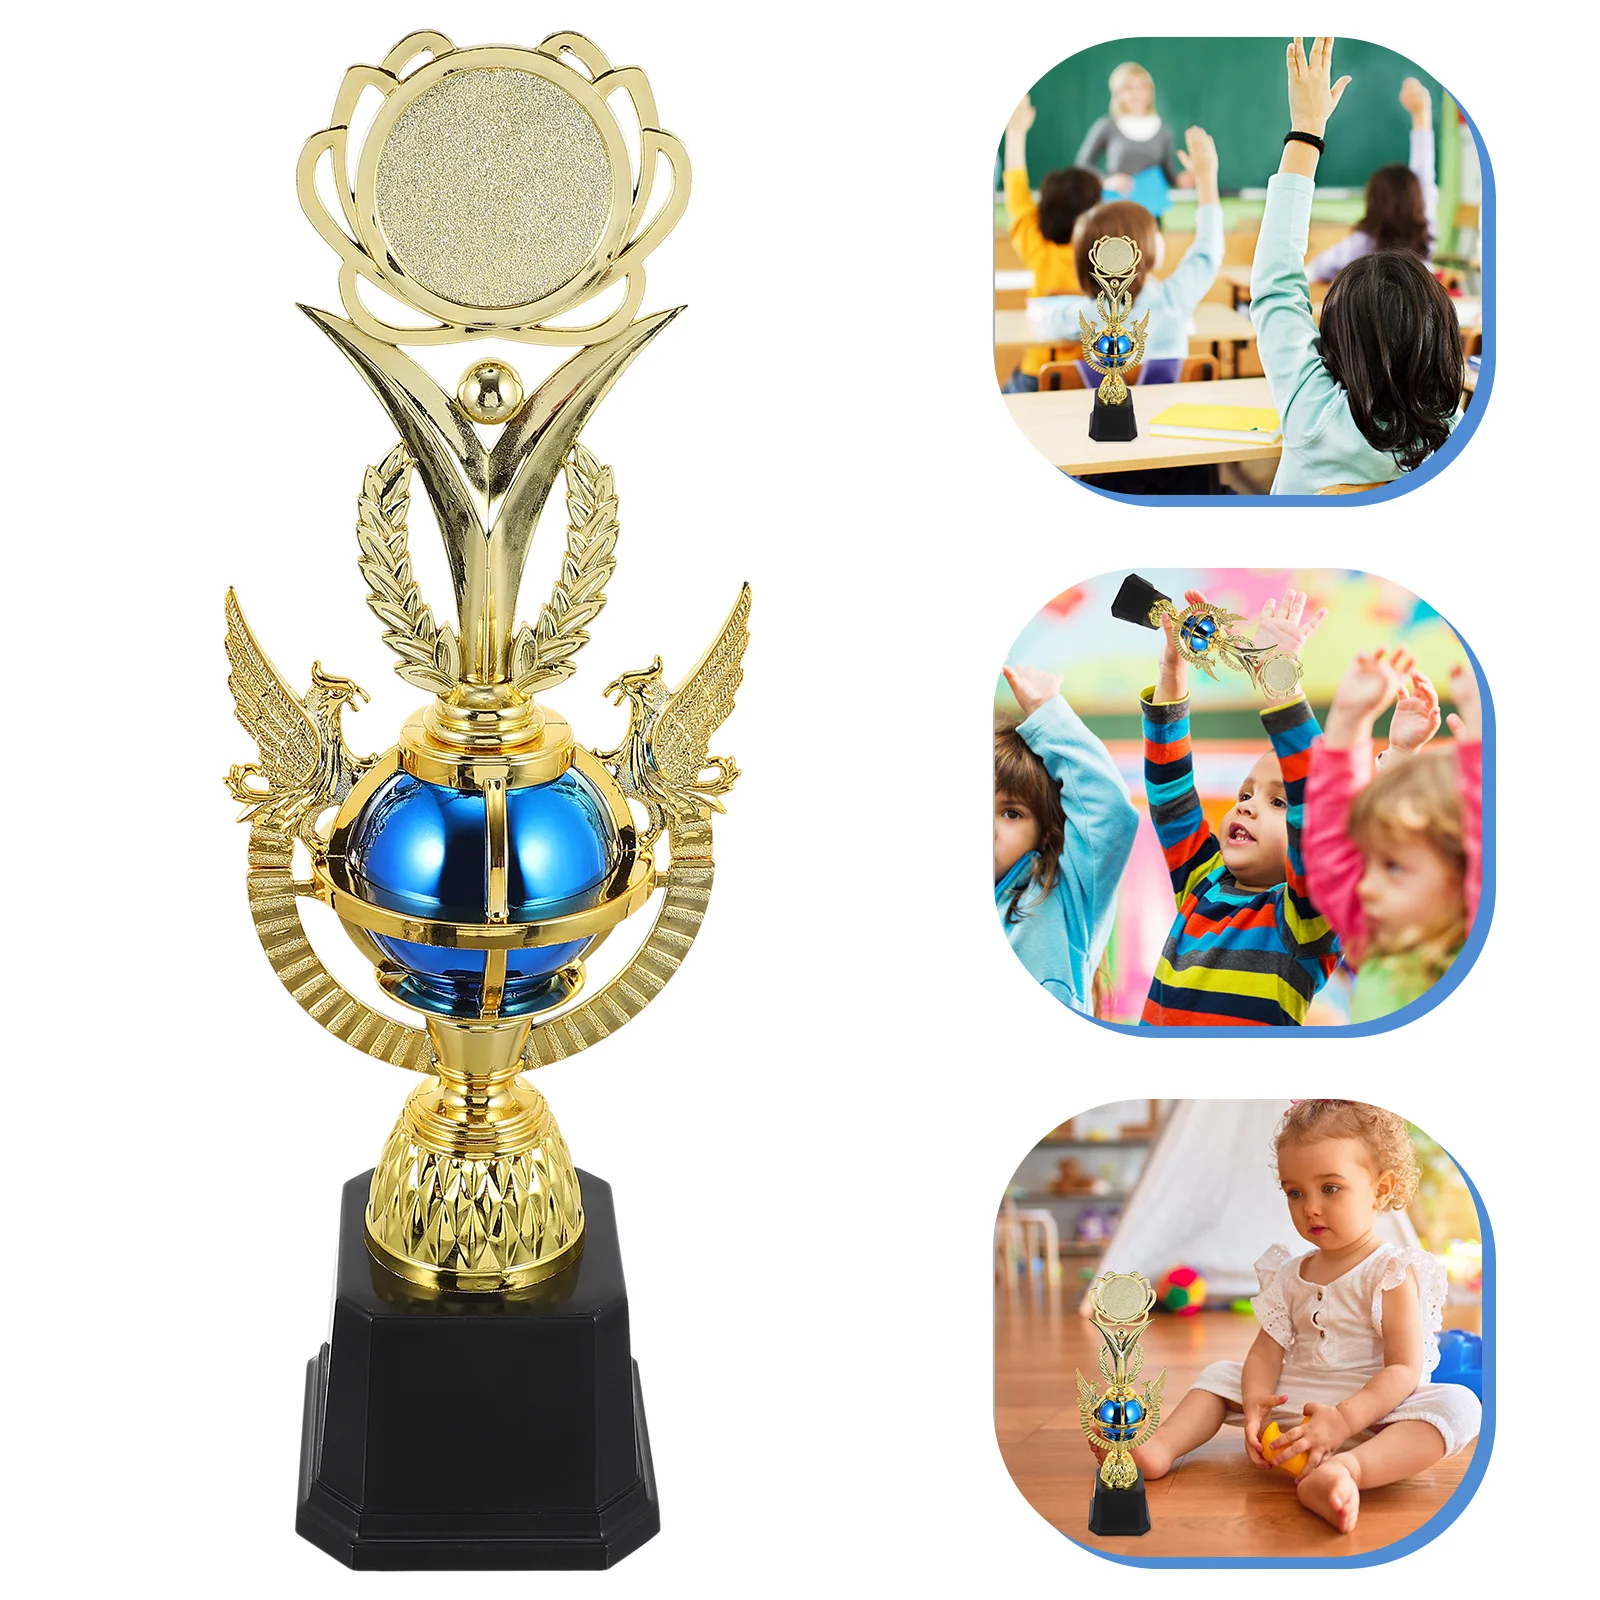 

Яркие наградные призы, пластиковая награда, призовой Кубок, модели для детей